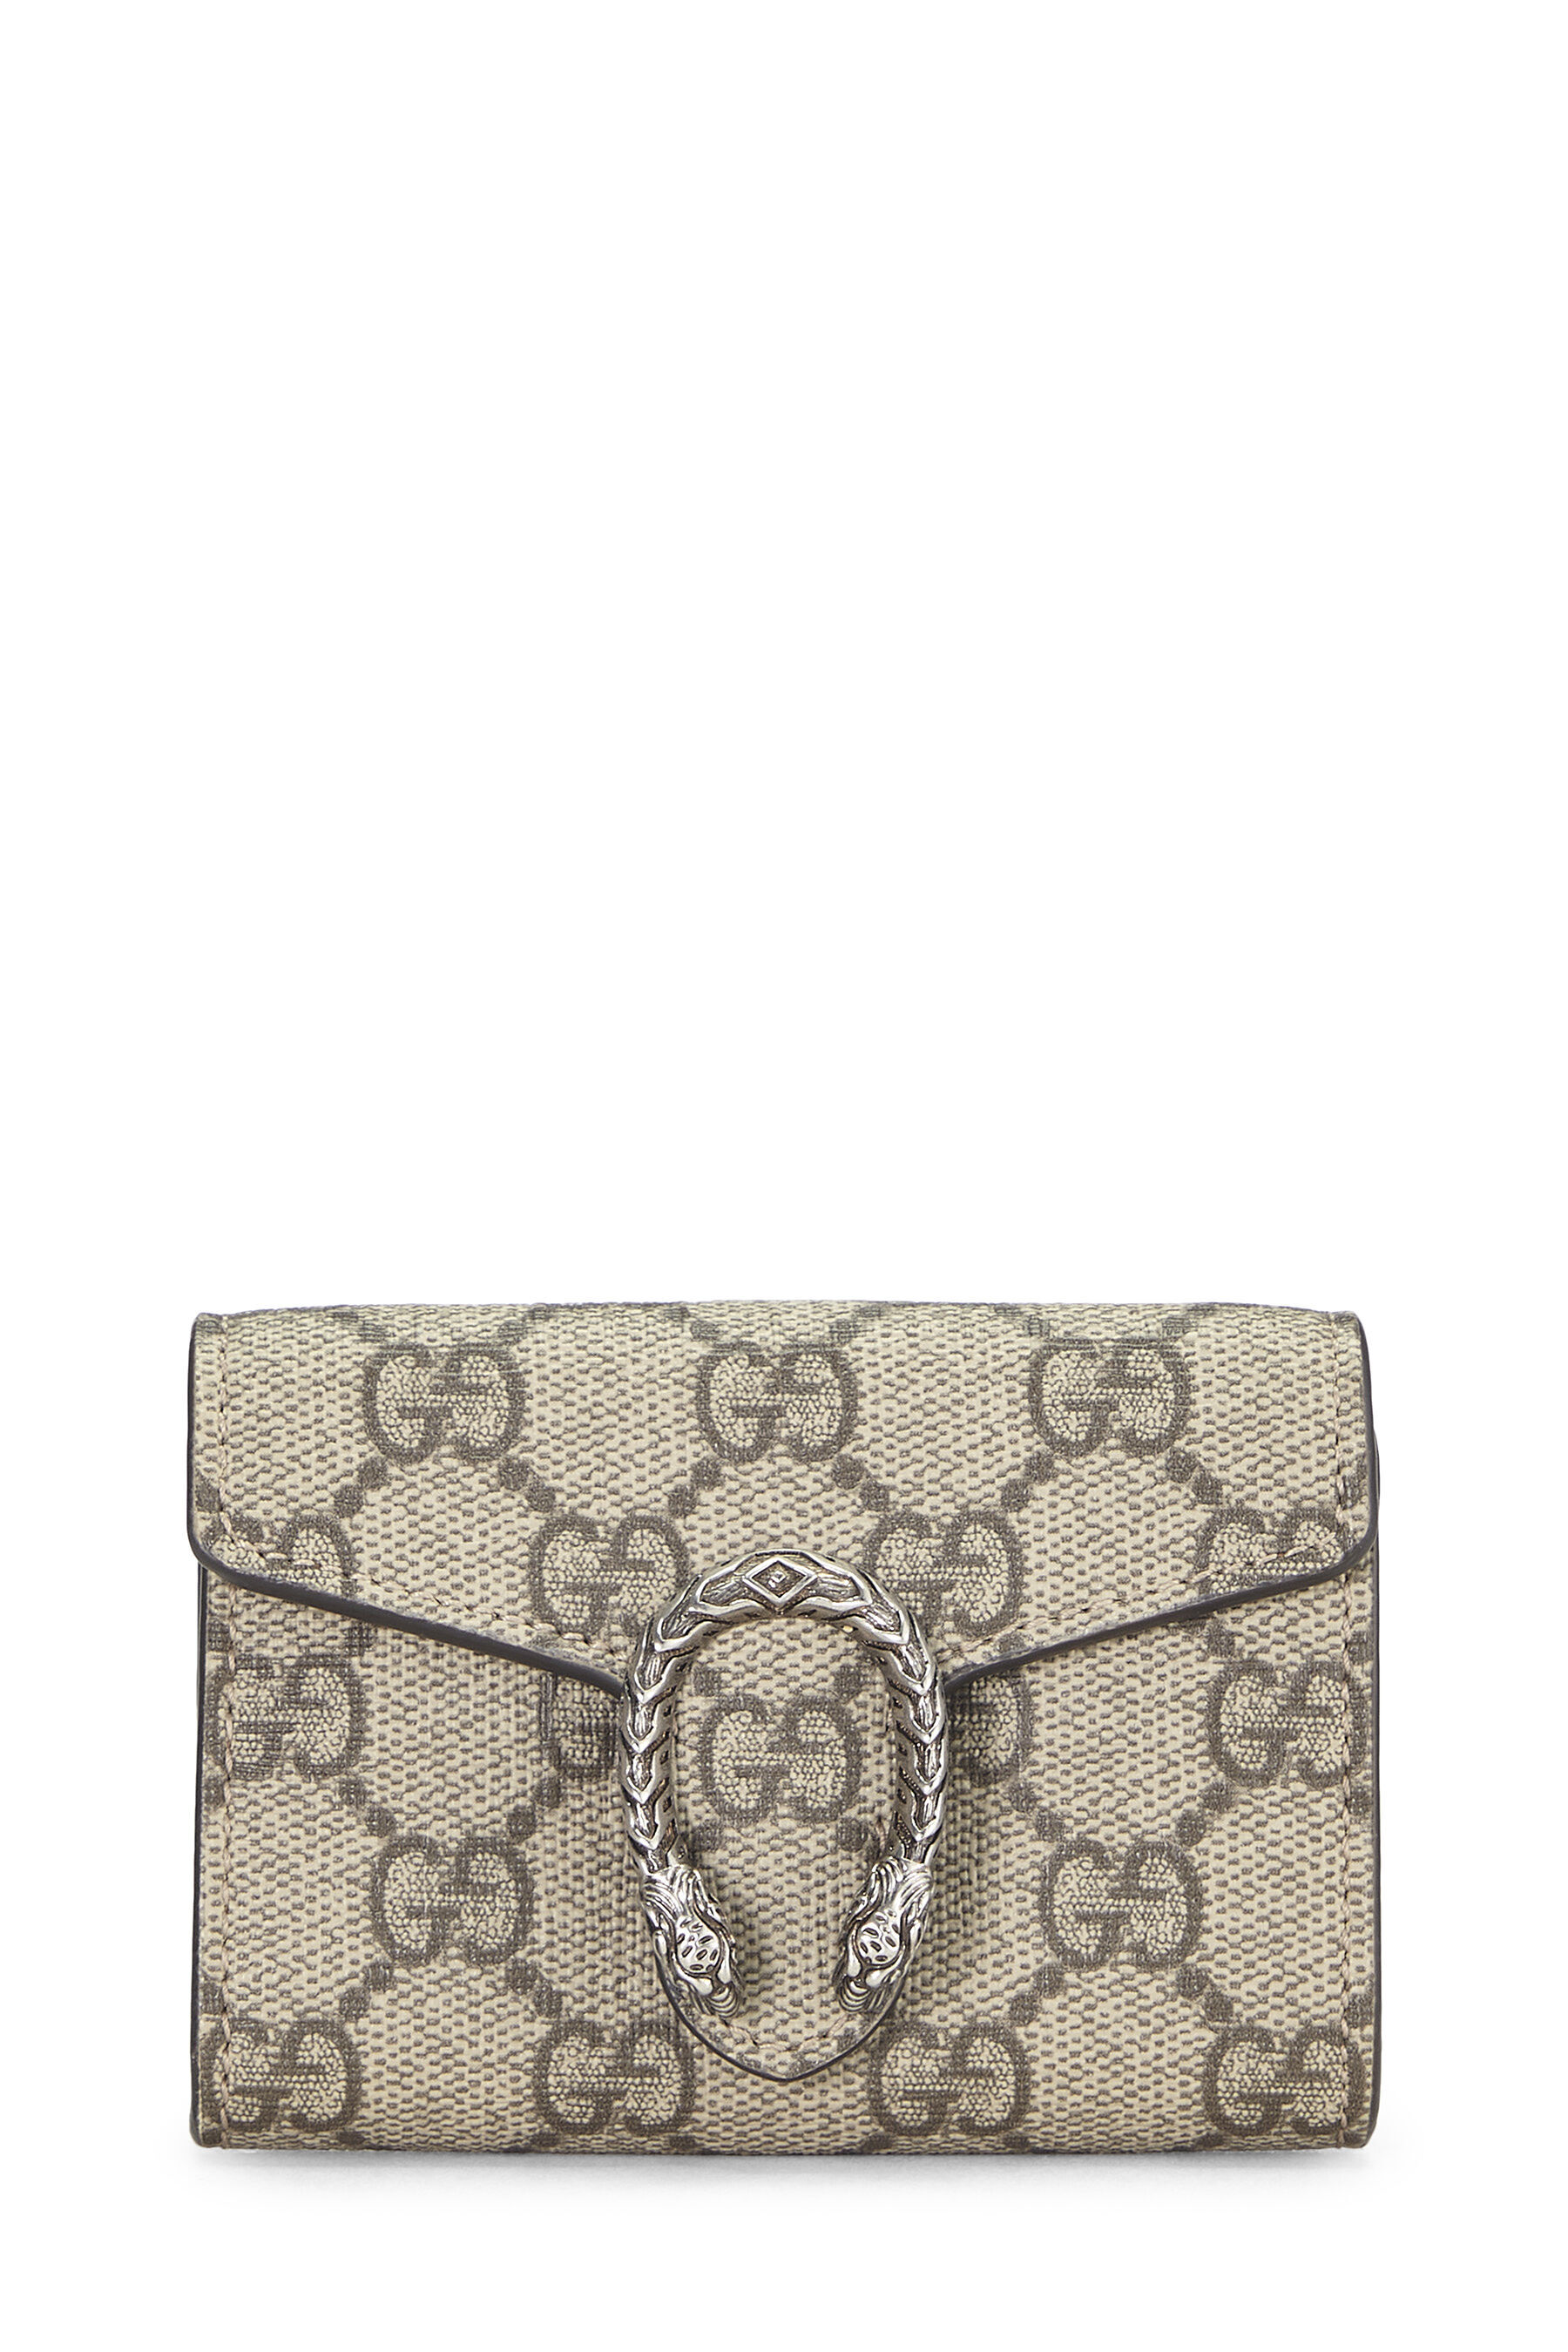 Gucci Dionysus Small GG Shoulder Bag - Luxury Helsinki